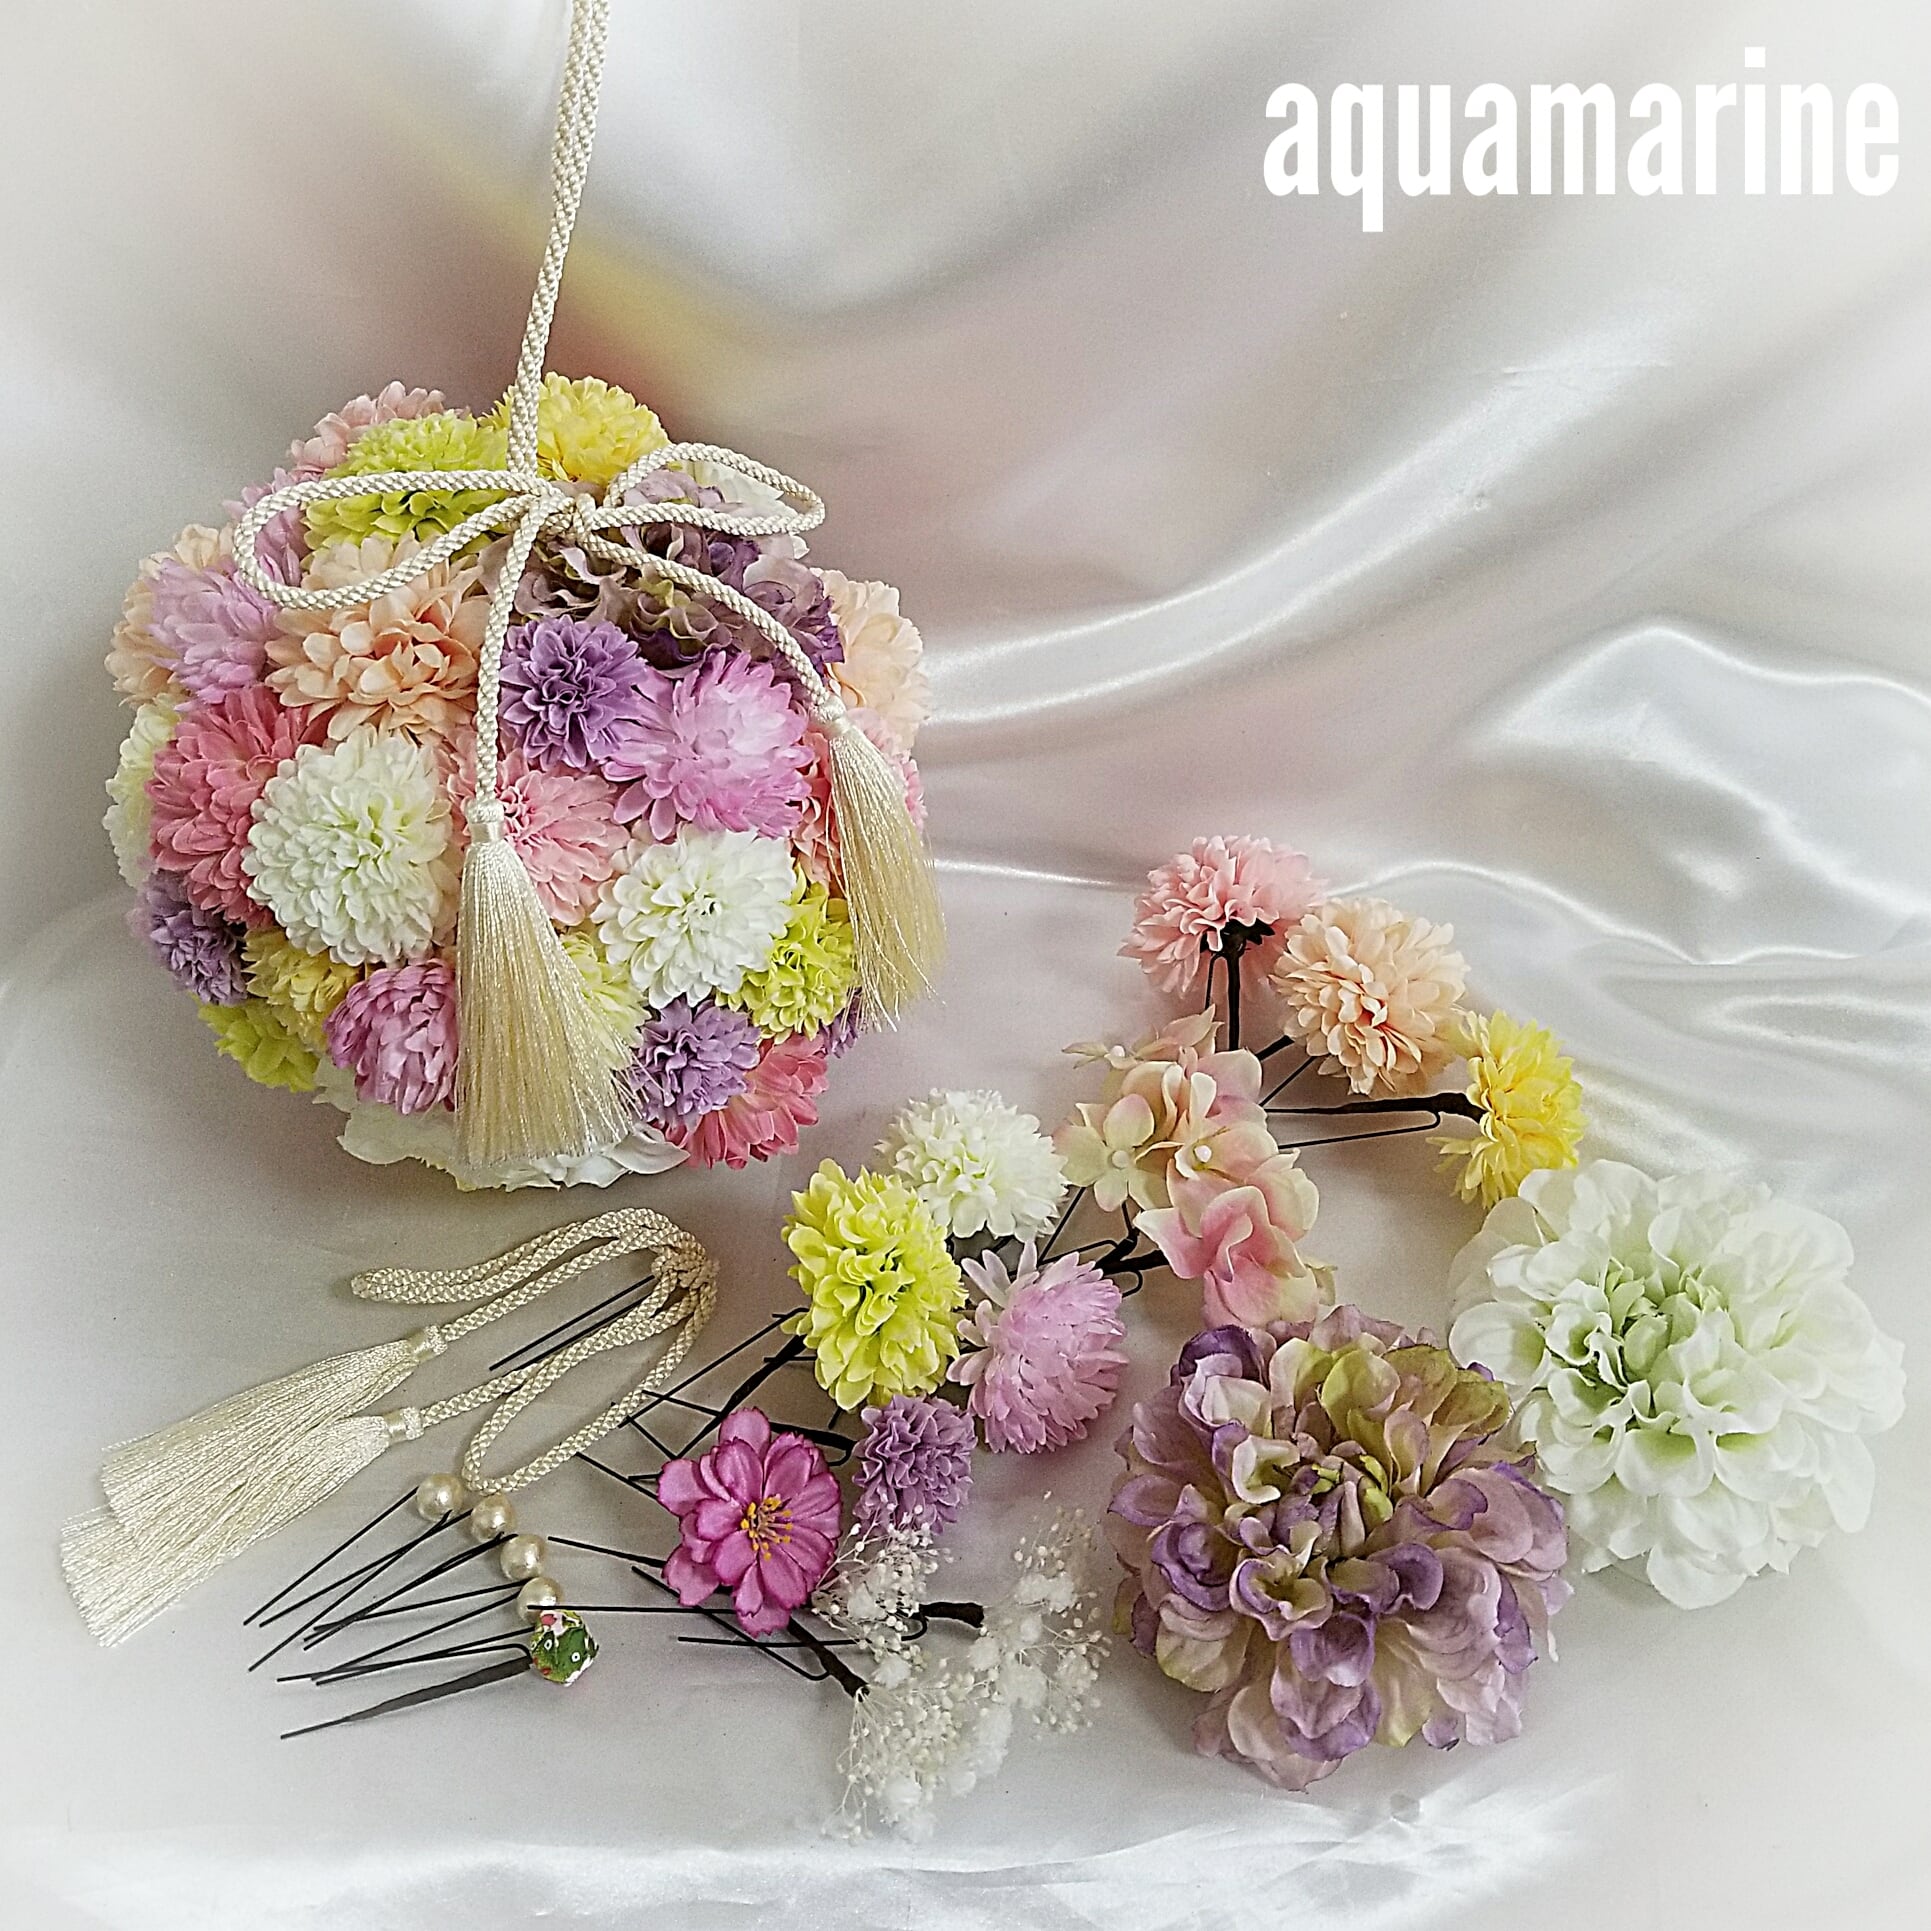 オーダーメイドブーケ&髪飾りセット | aquamarine.flowers128